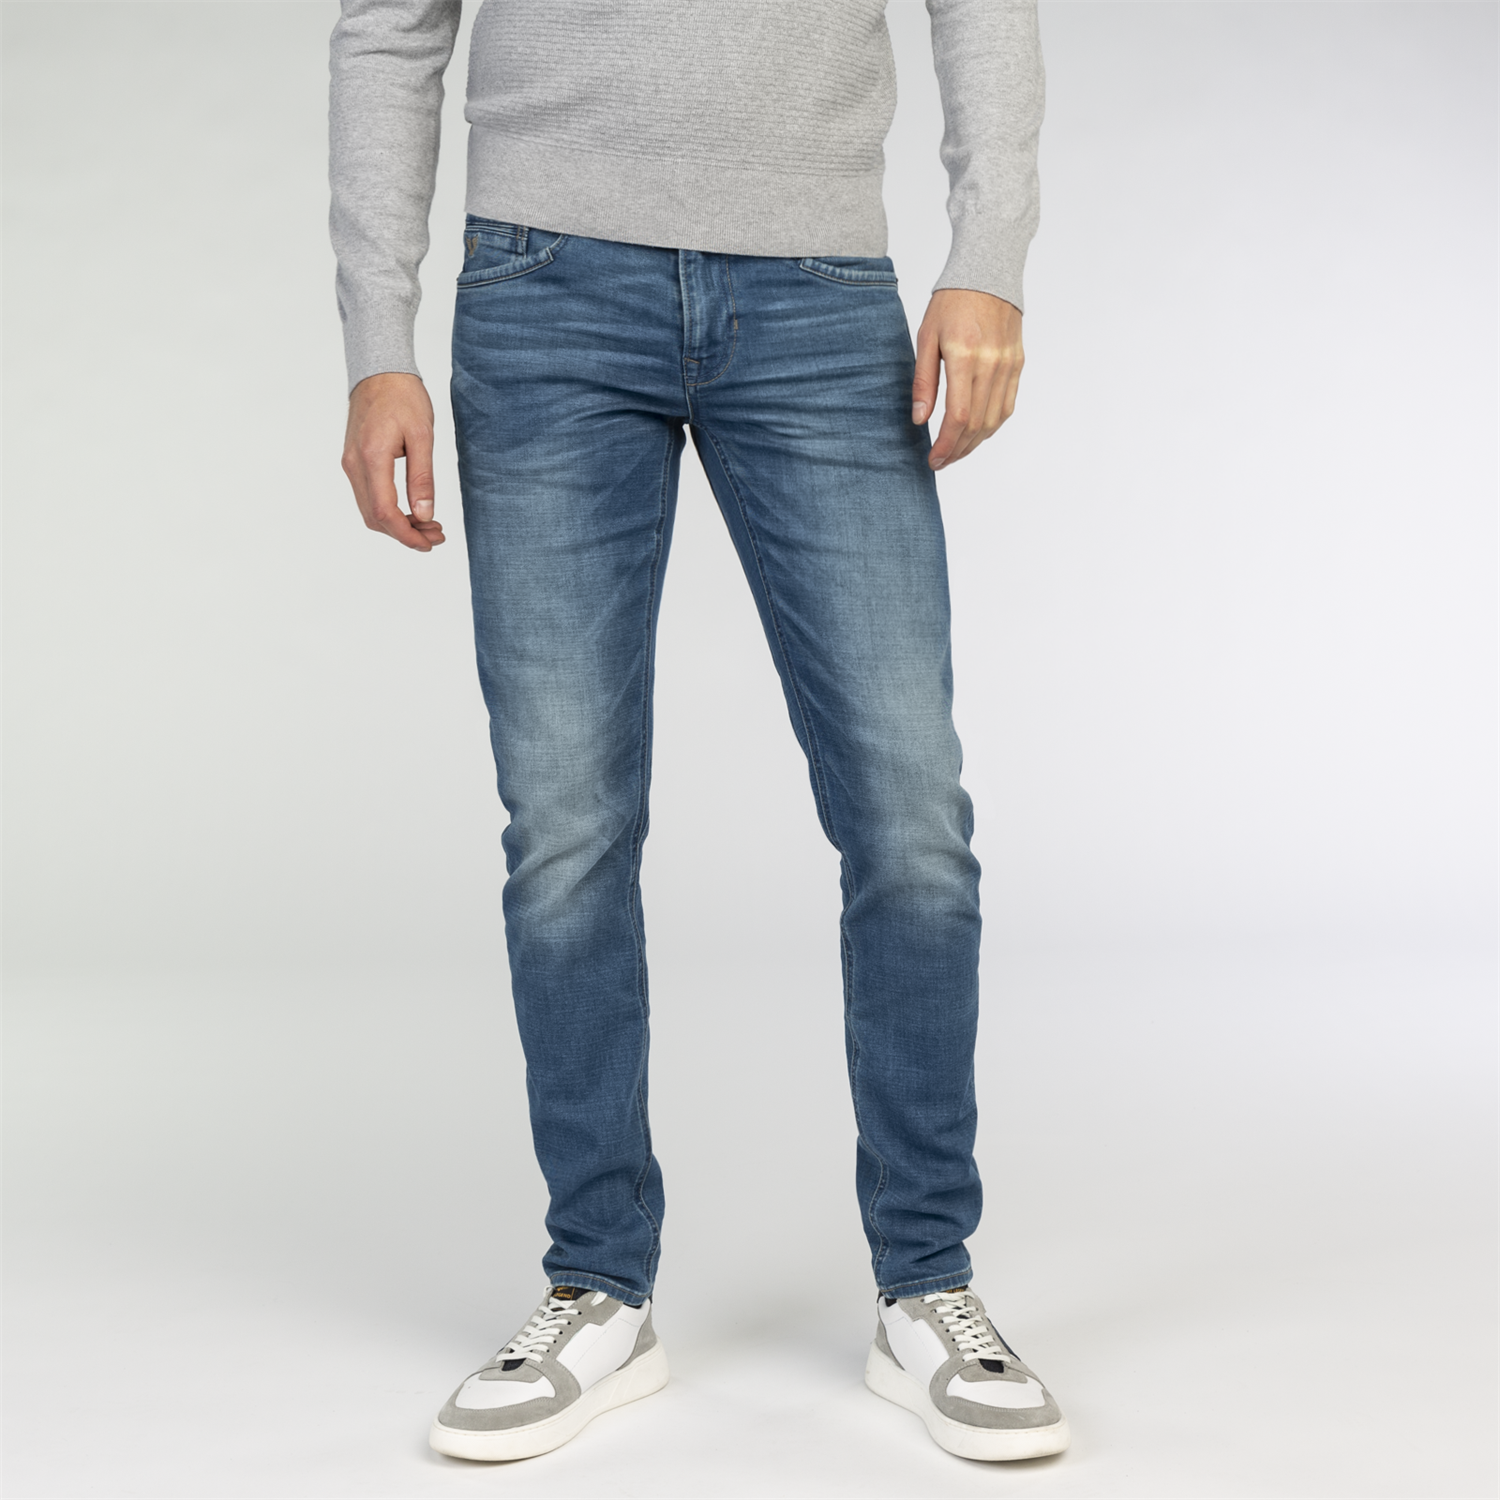 Uitvoerbaar Punt makkelijk te gebruiken PME LEGEND JEANS Ptr140-smb Jeans kopen bij Fabert de Wit